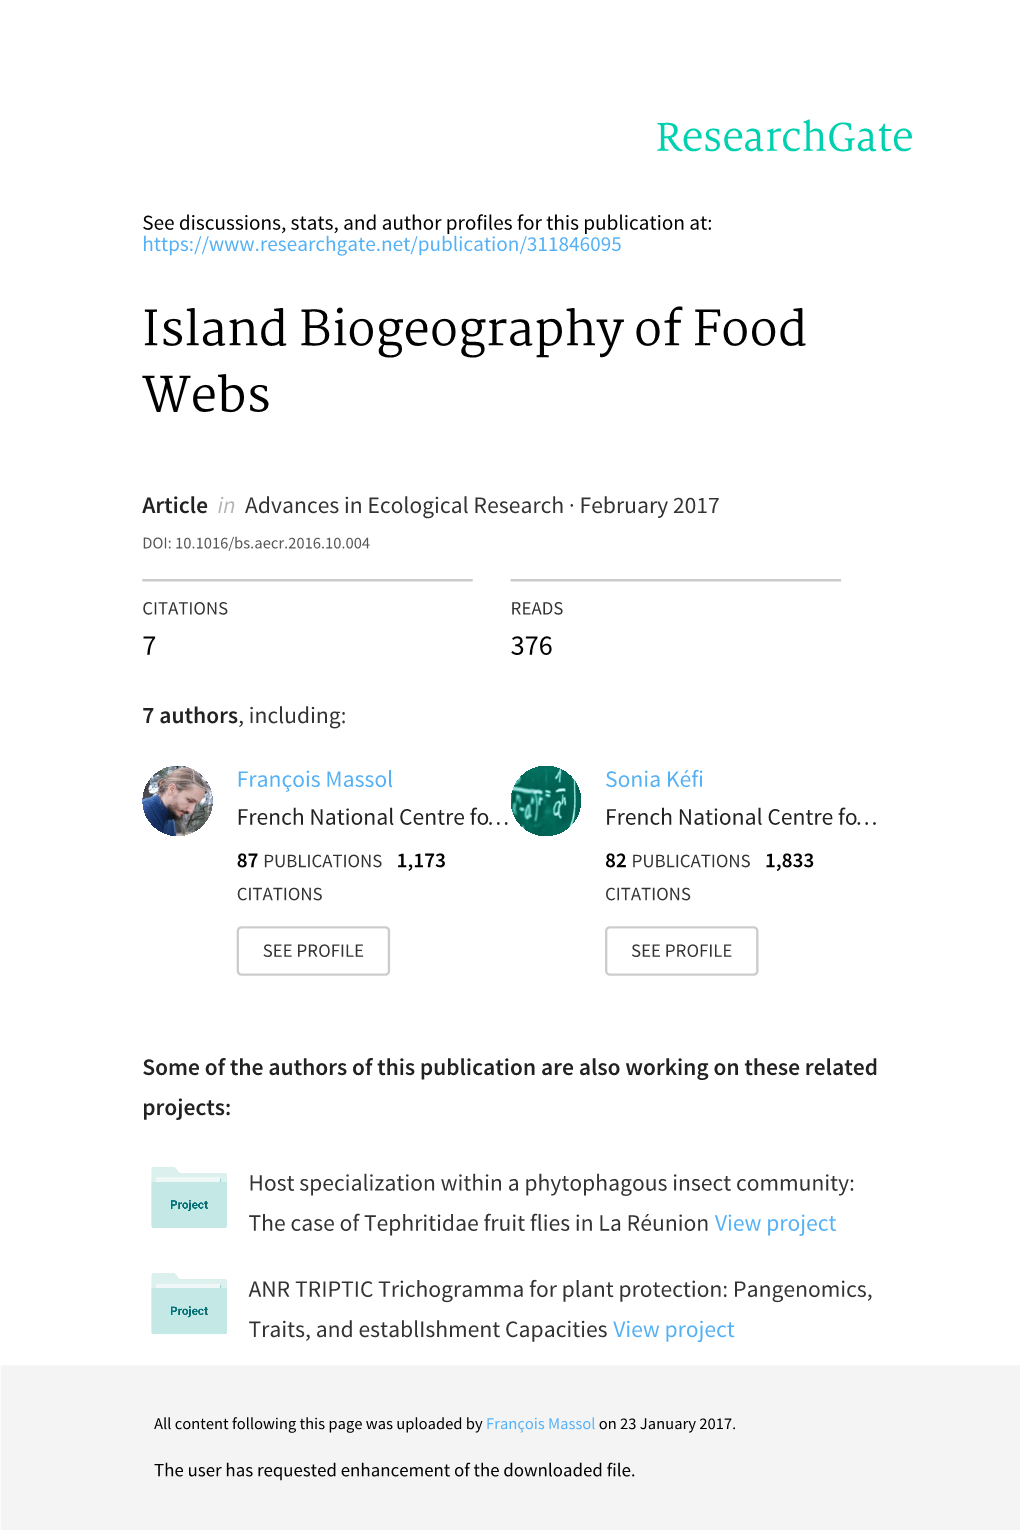 Island Biogeography of Food Webs